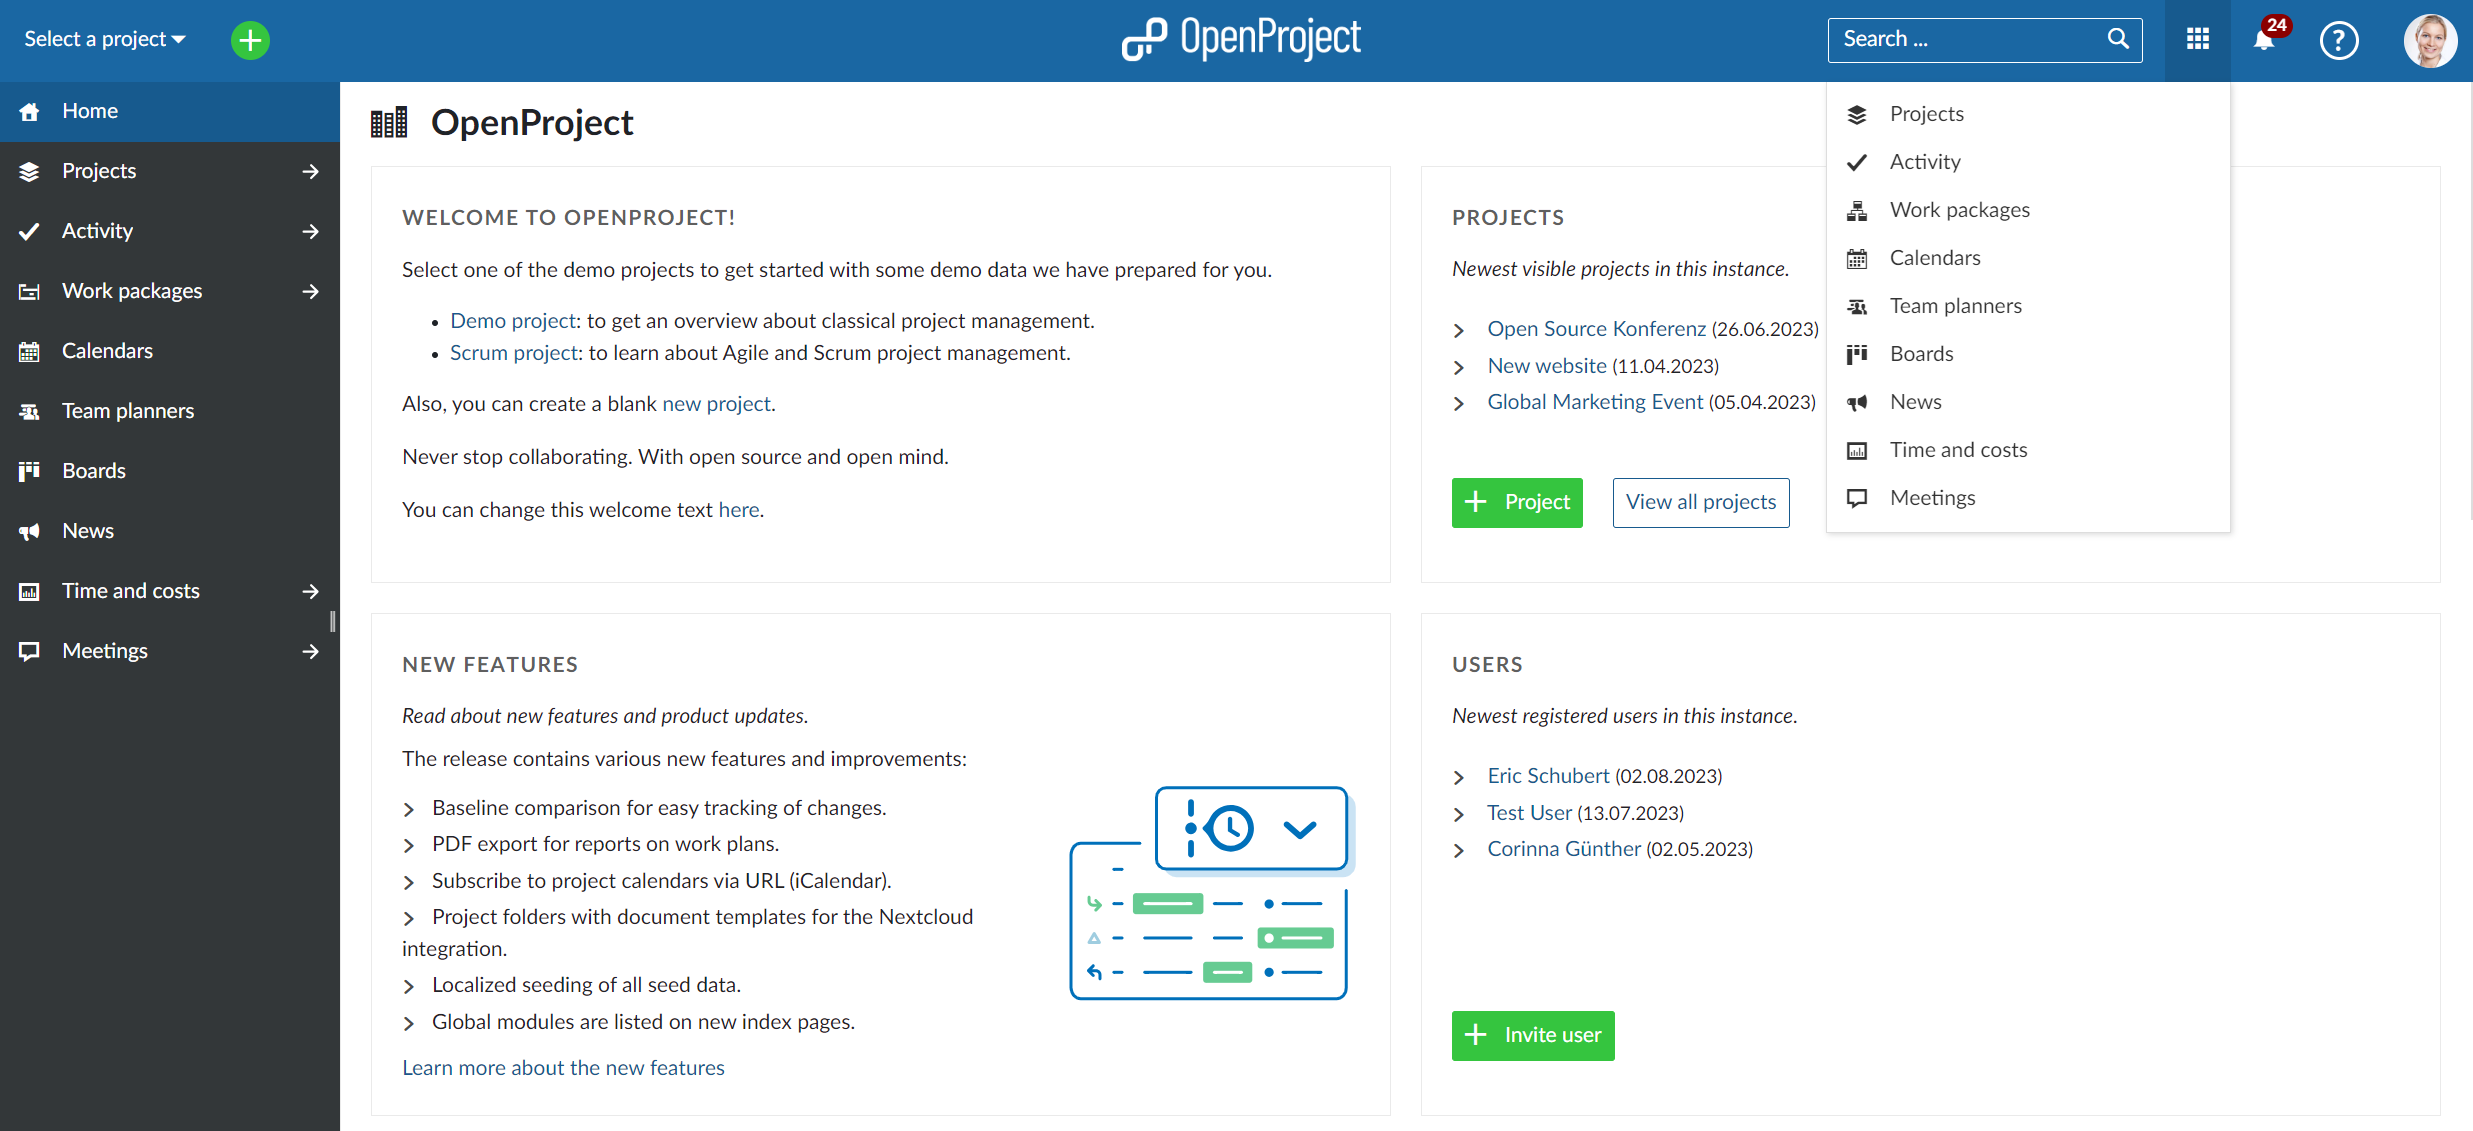 Resumen de módulos globales en OpenProject